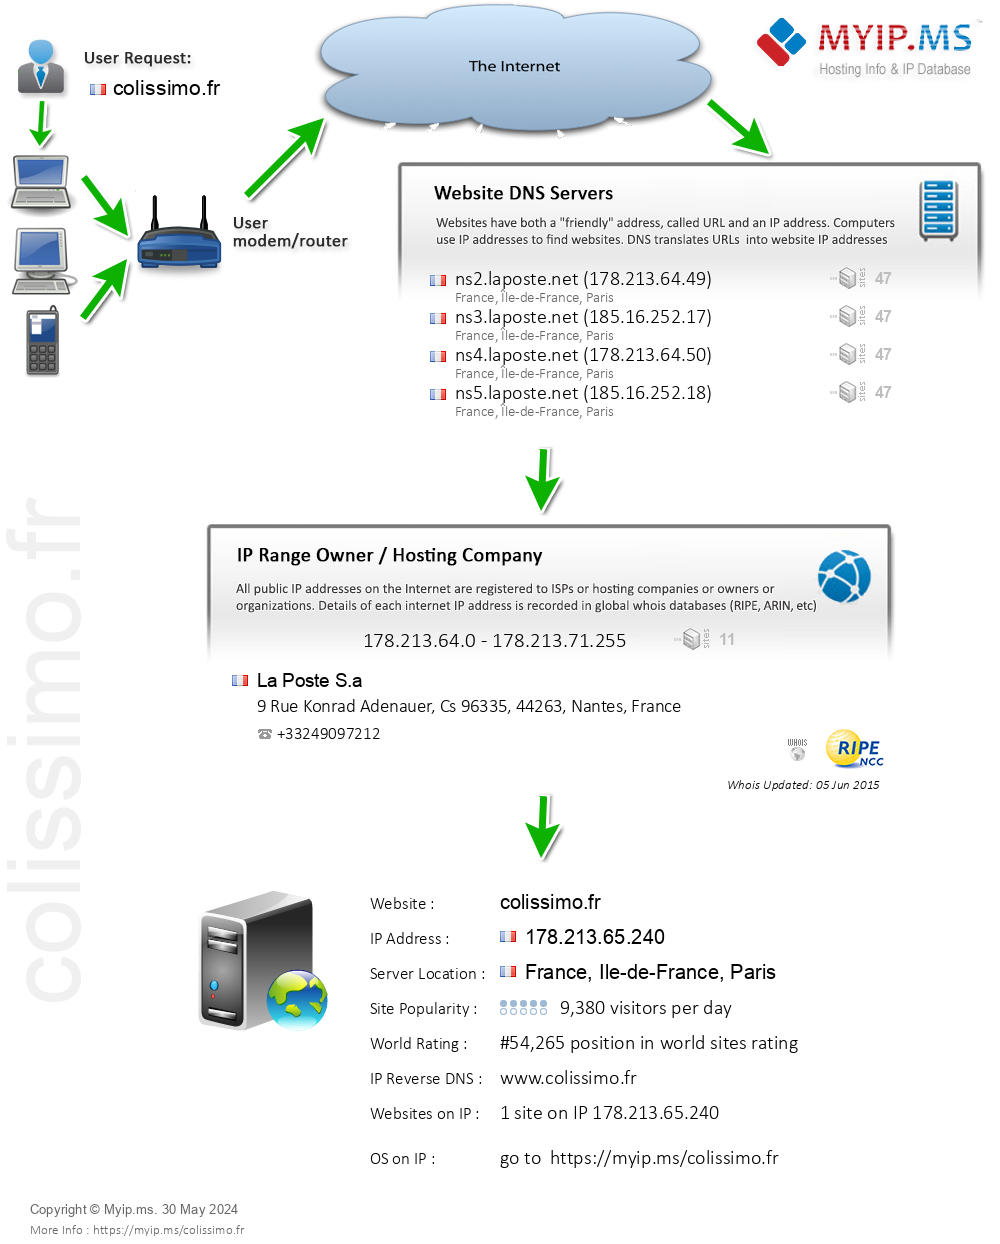 Colissimo.fr - Website Hosting Visual IP Diagram